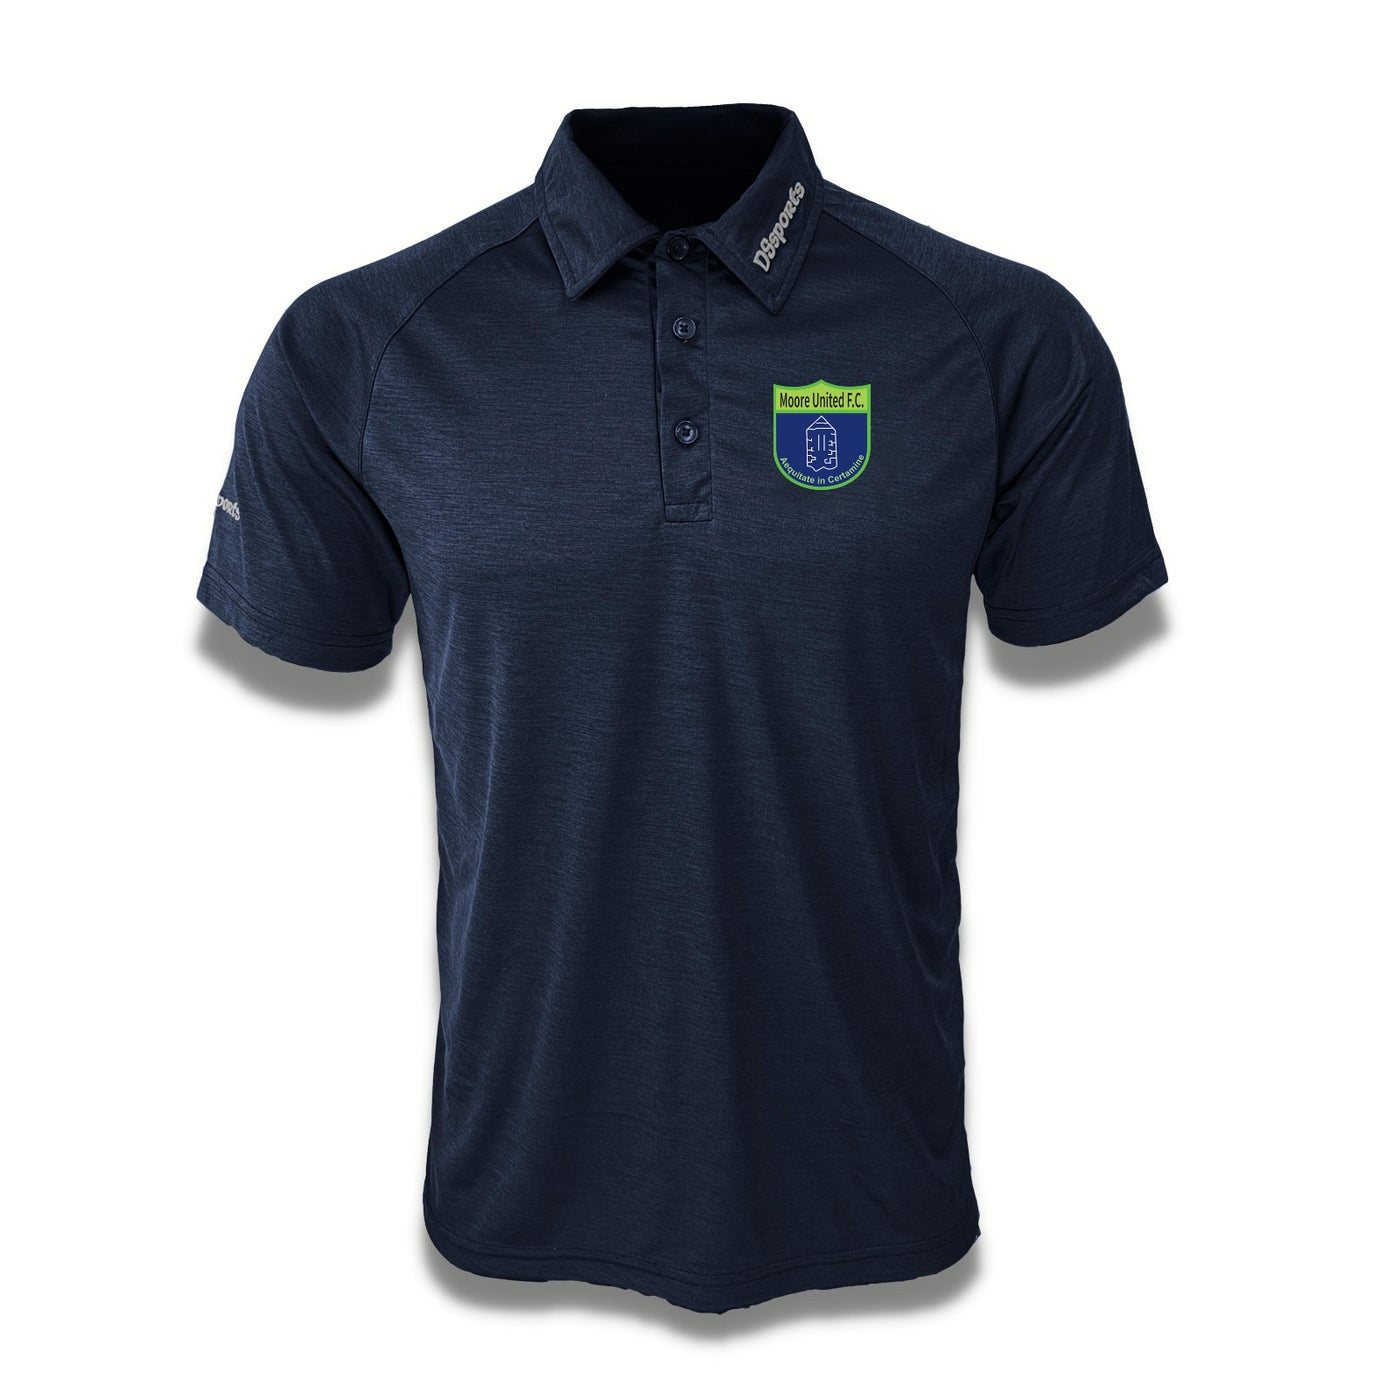 Moore United - Polo Shirt